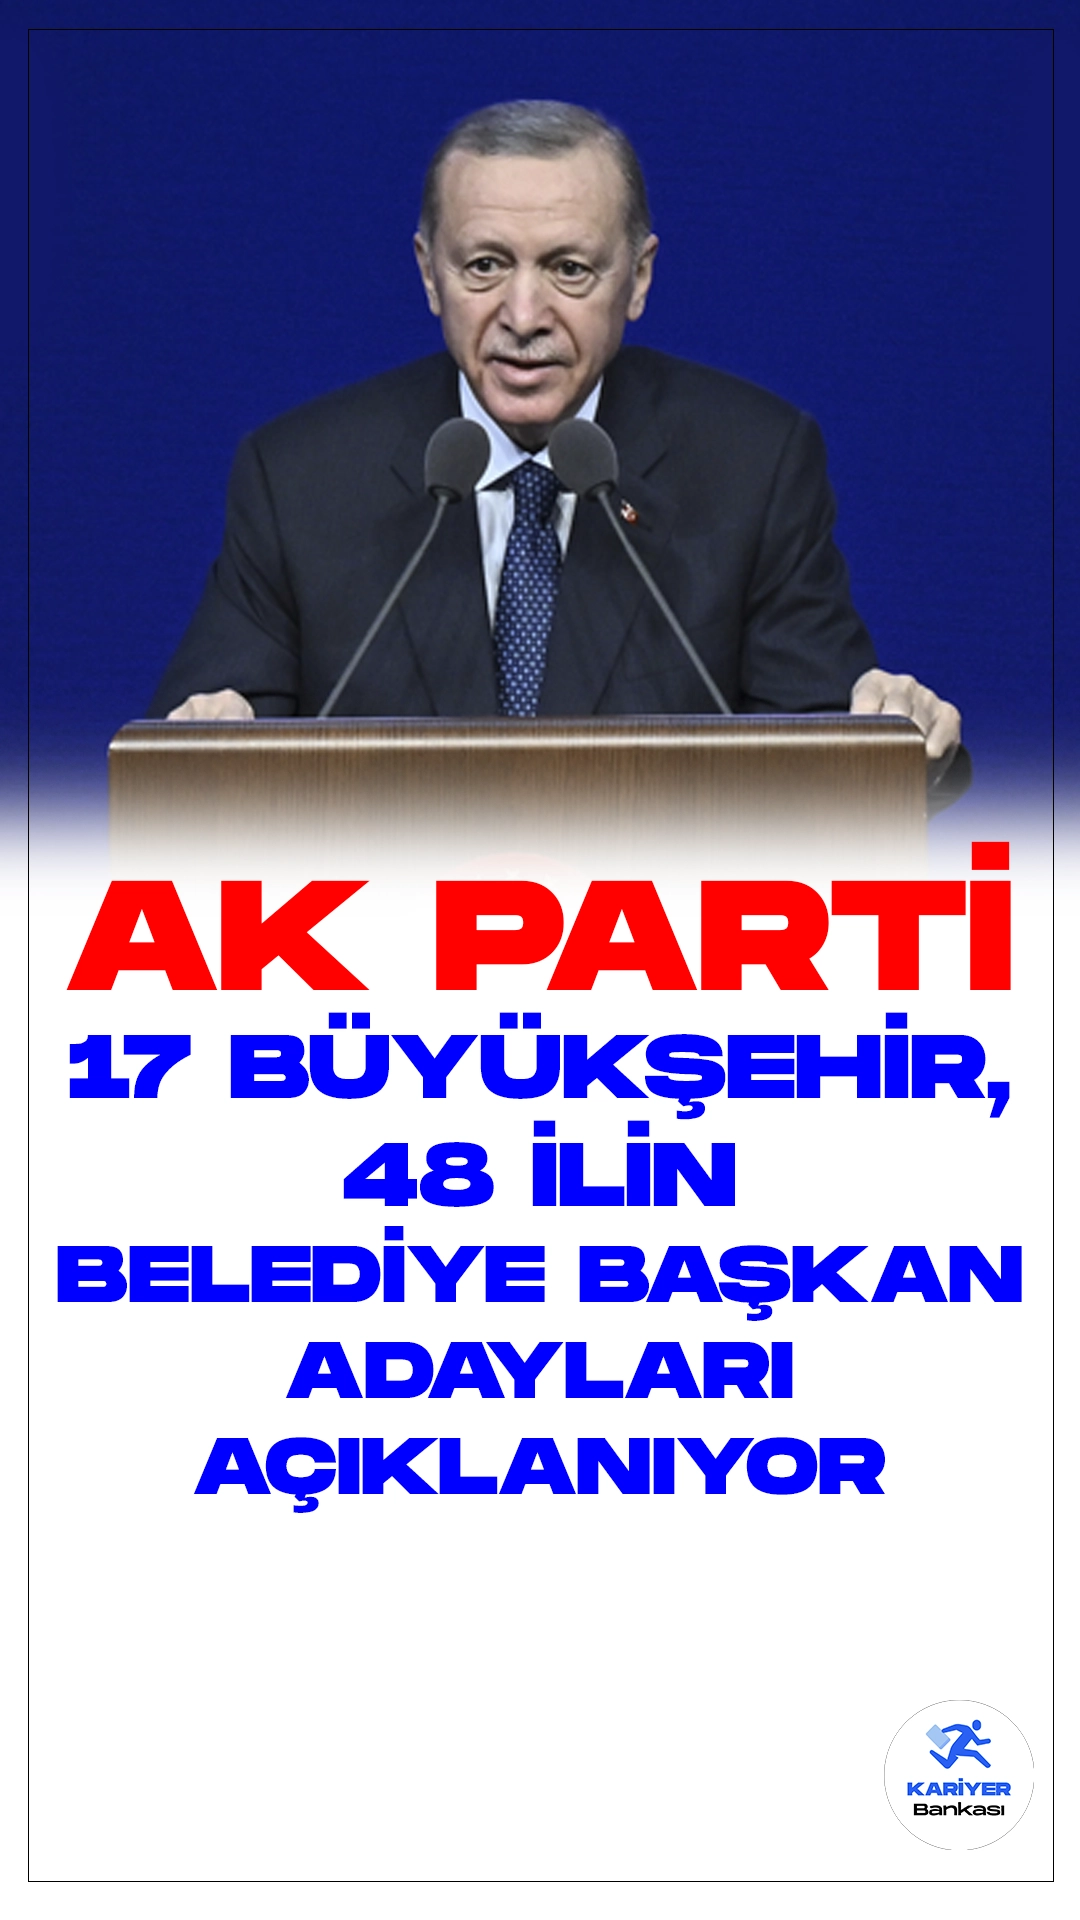 AK Parti Belediye Başkan Adayları Açıklanıyor.Cumhurbaşkanı Recep Tayyip Erdoğan, Ankara Ticaret Odası Congresium'da düzenlenen AK Parti Aday Tanıtım Toplantısı'nda önemli açıklamalarda bulundu.